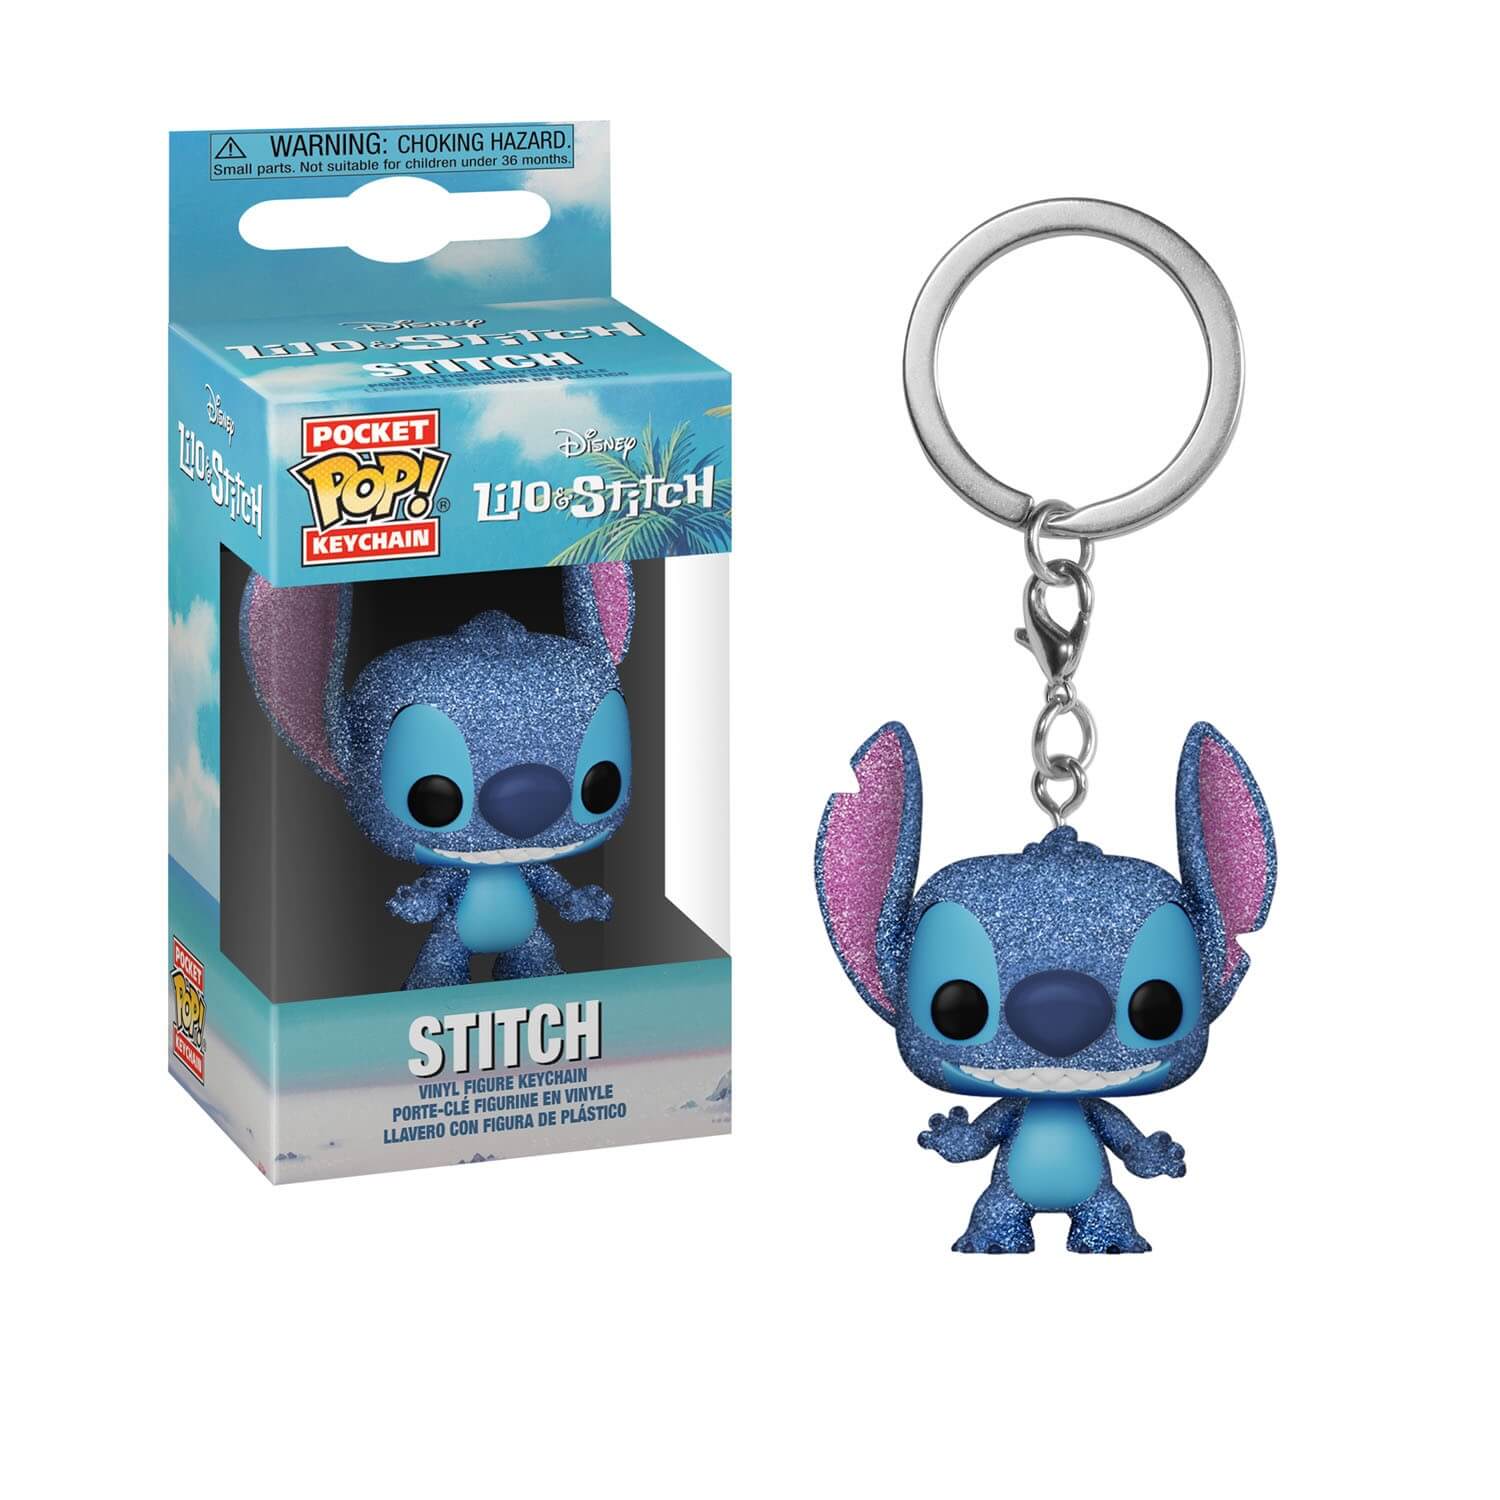 Lilo & Stitch - Stitch - Porte stylo